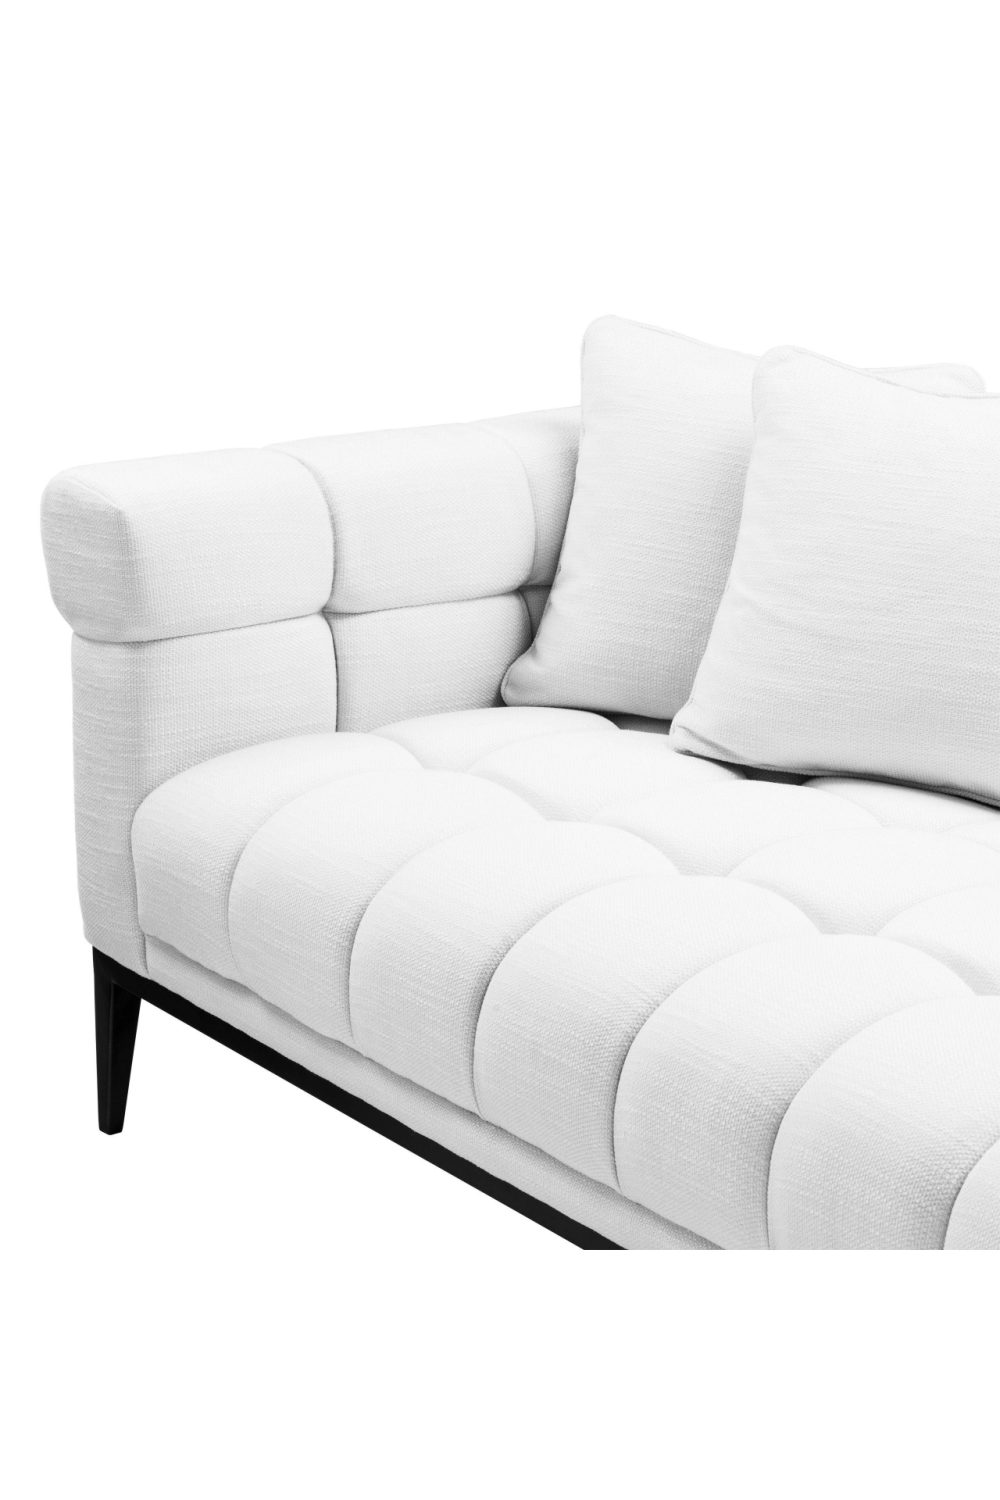 White Tufted Sofa | Eichholtz Aurelio | Oroa.com